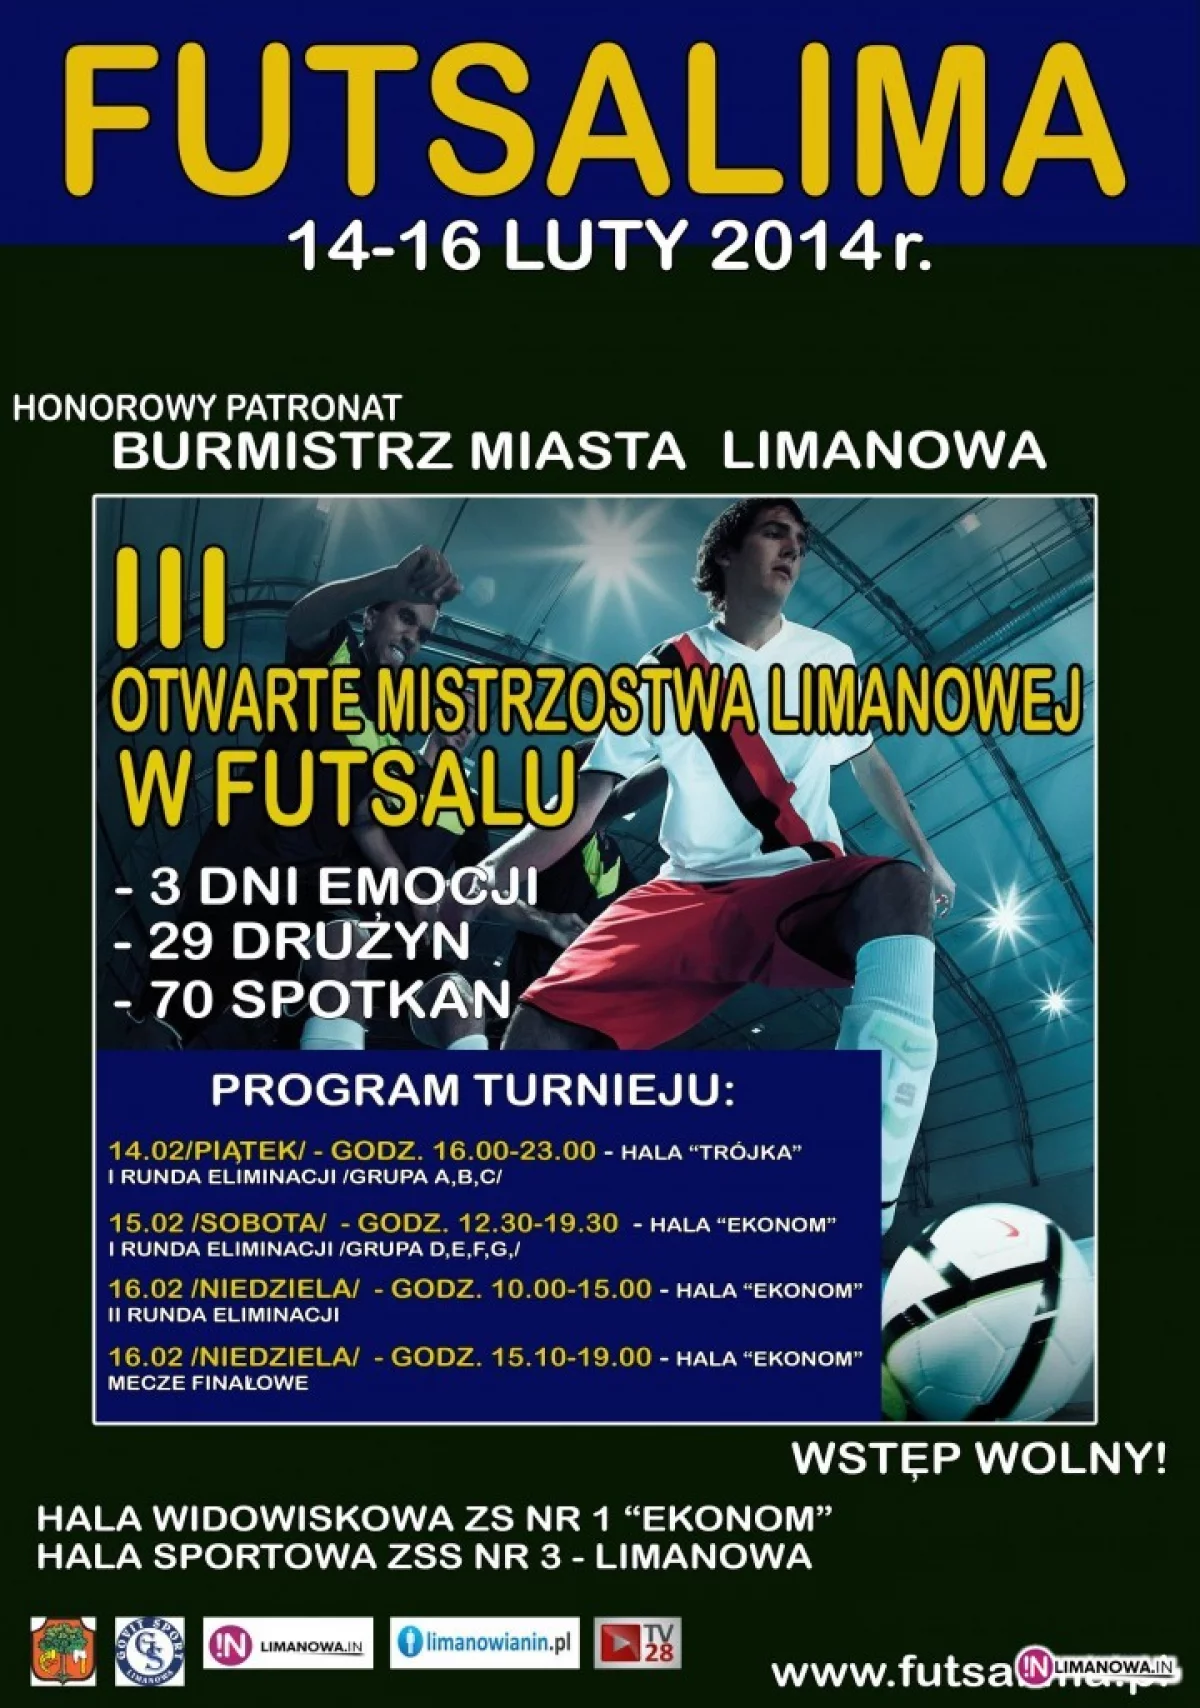 Futsalima 2014: pierwsze rozstrzygnięcia